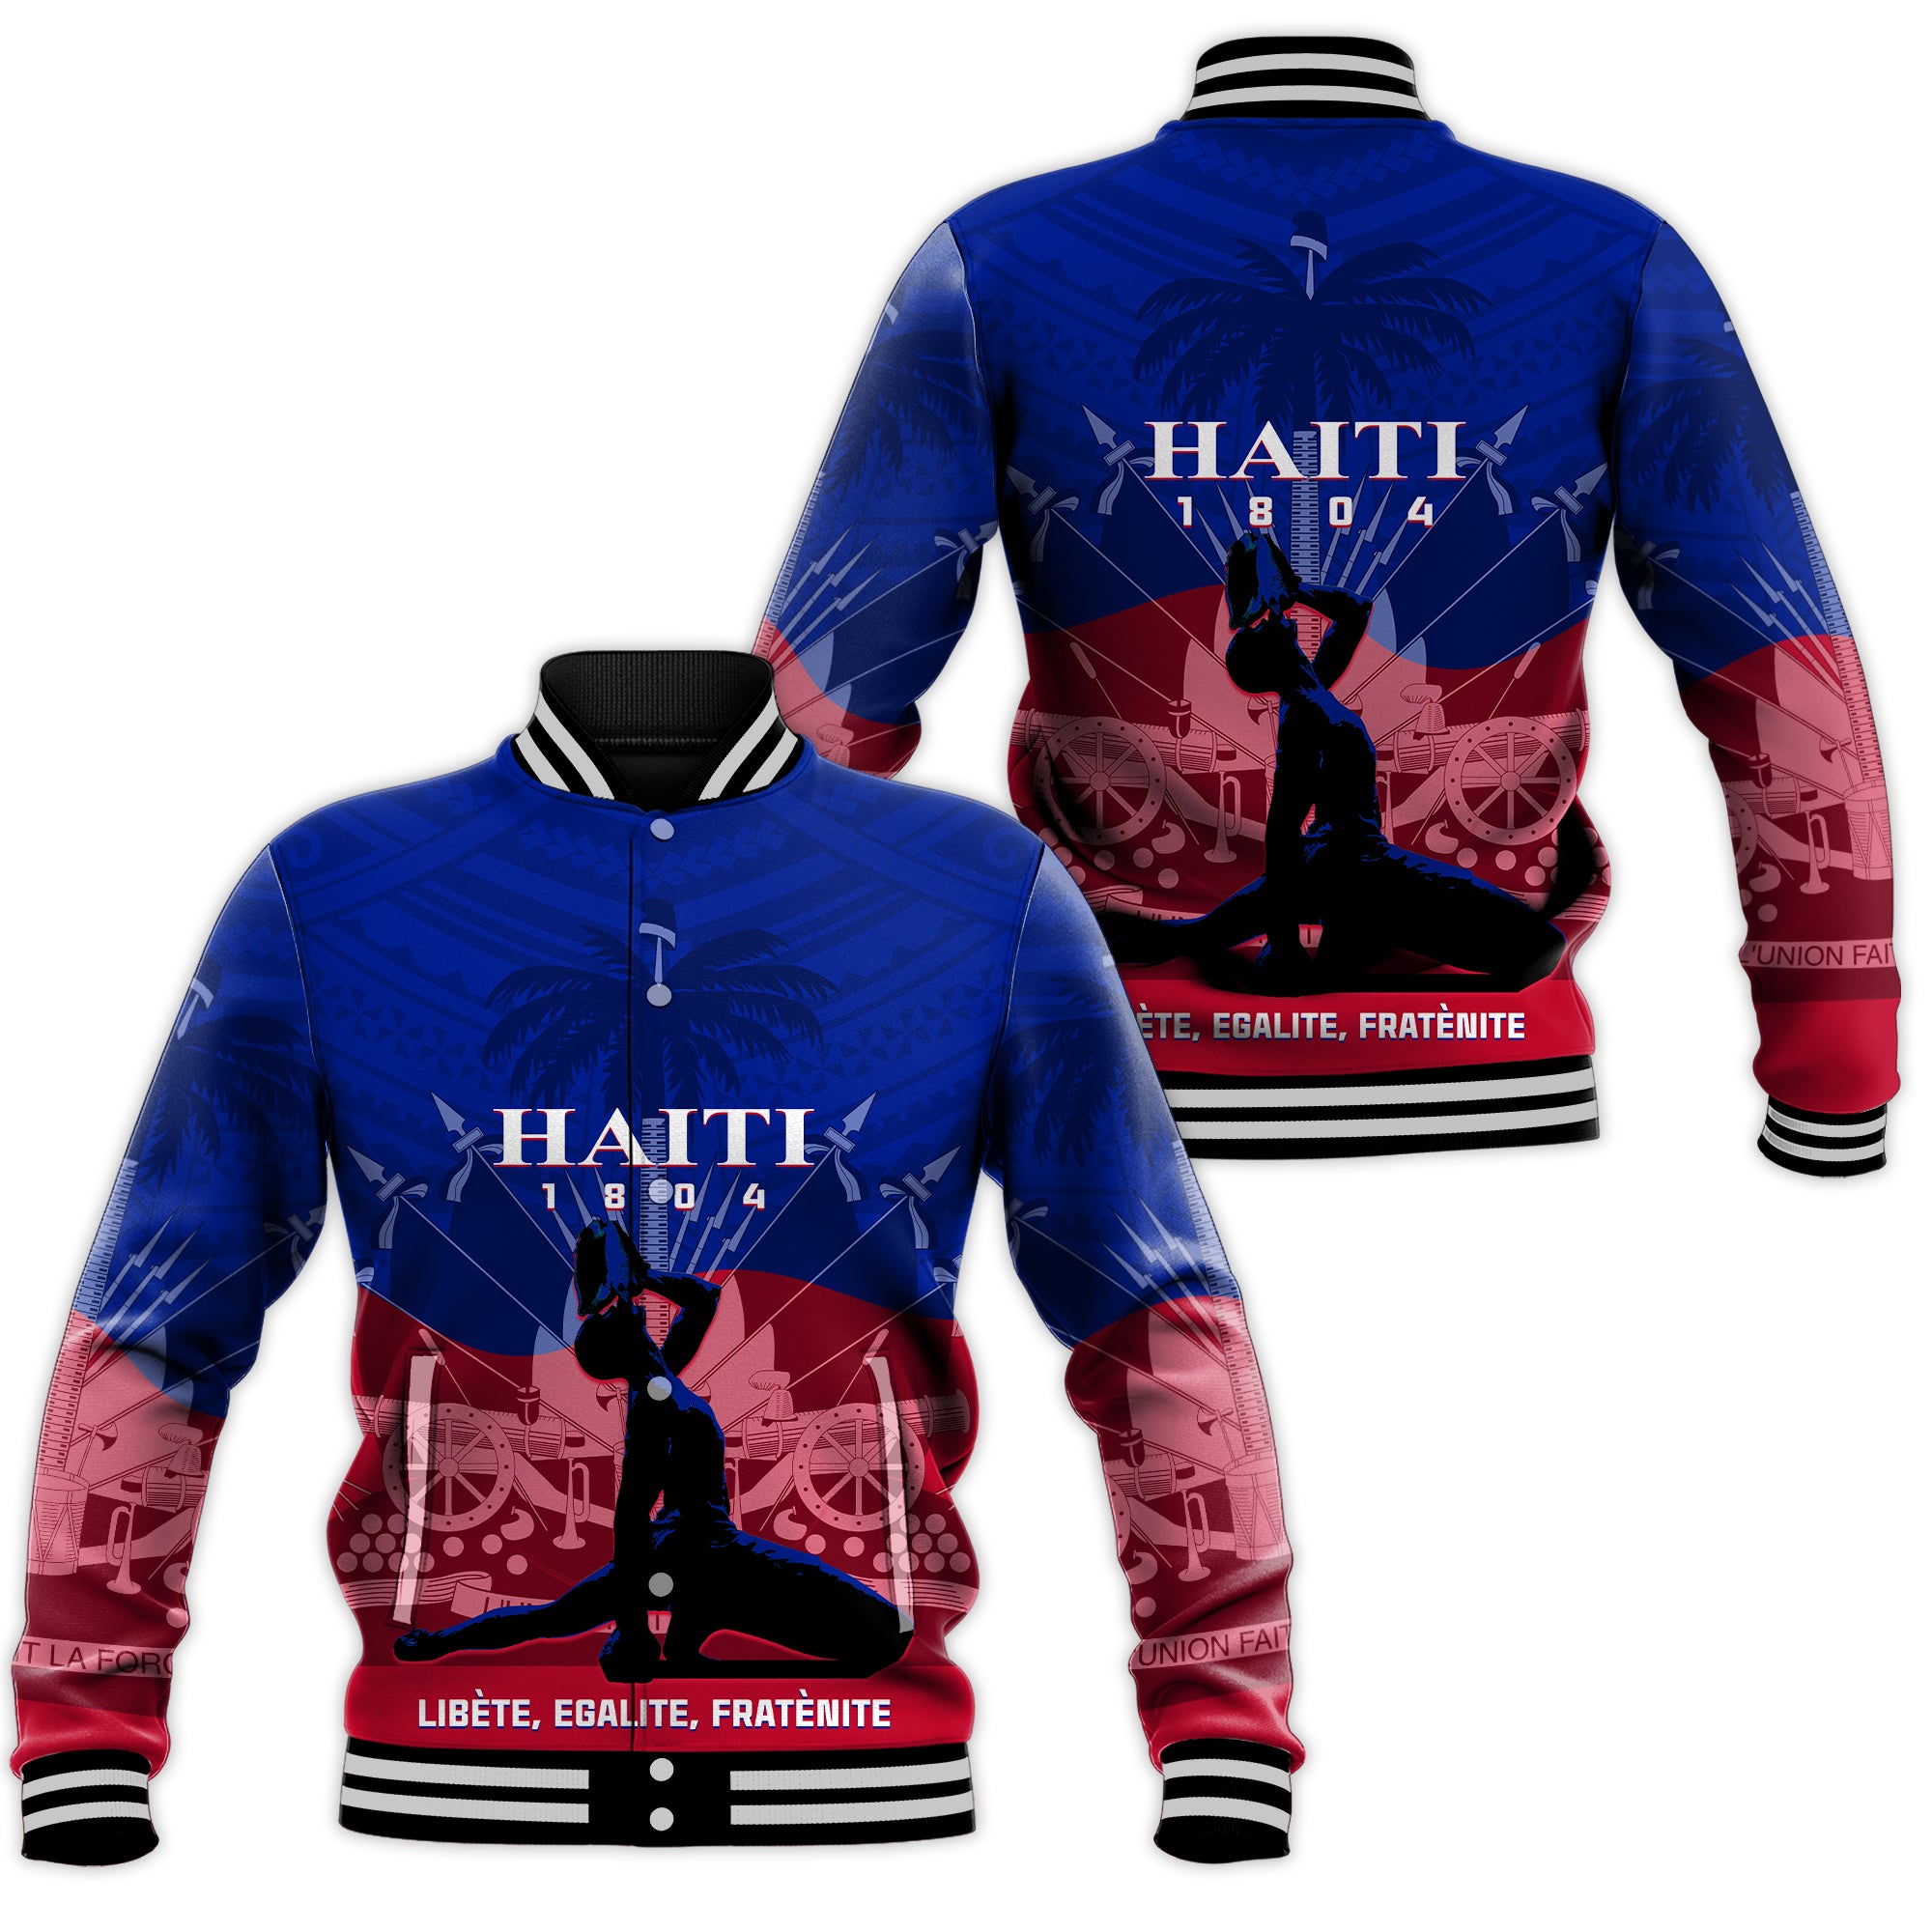 Haiti Baseball Jacket Negre Marron With Coat Of Arms Polynesian Style LT14